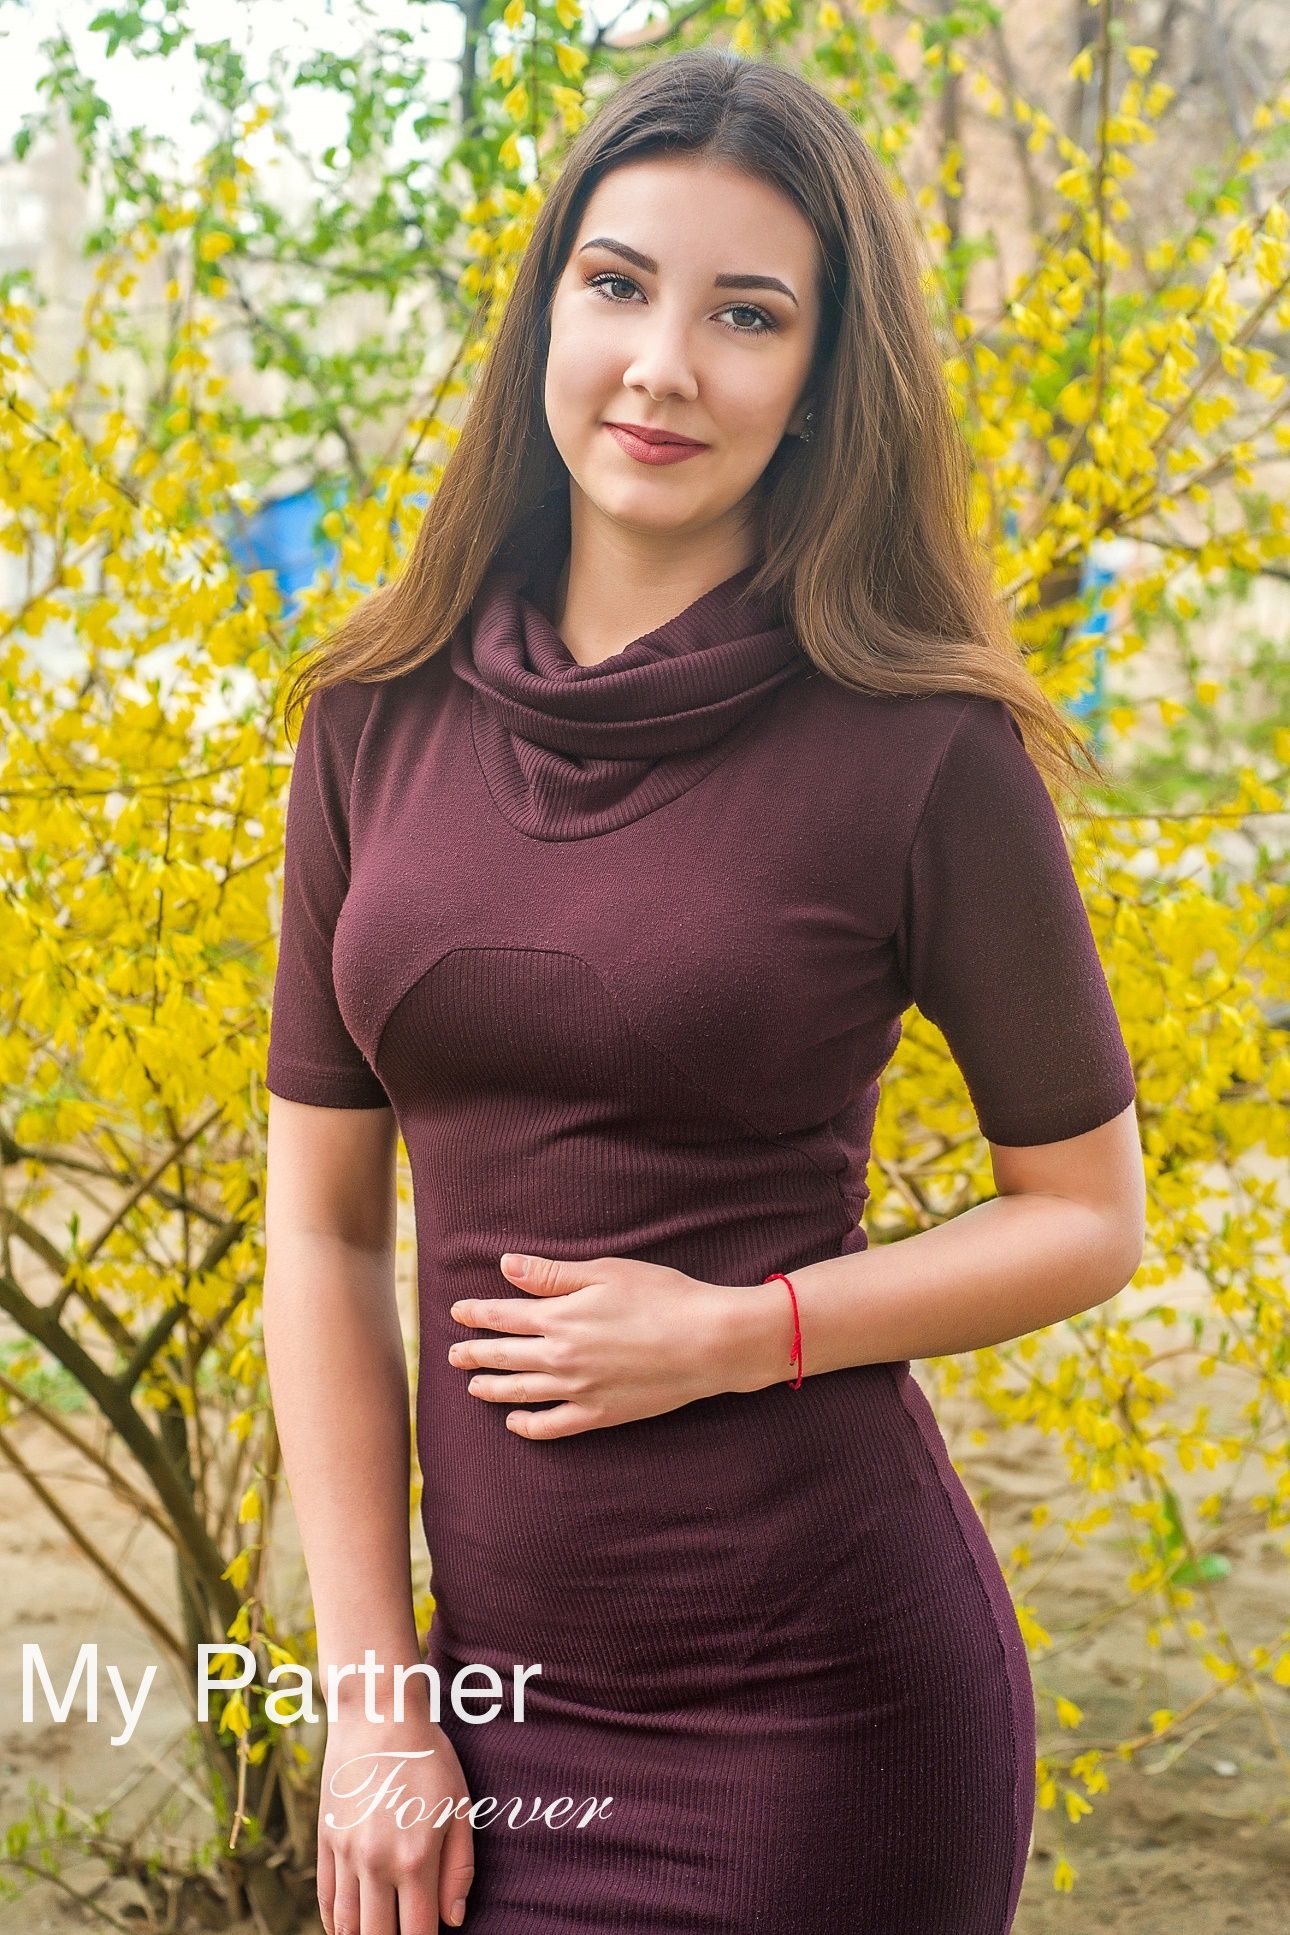 Online Dating with Stunning Ukrainian Girl Ekaterina from Melitopol, Ukraine